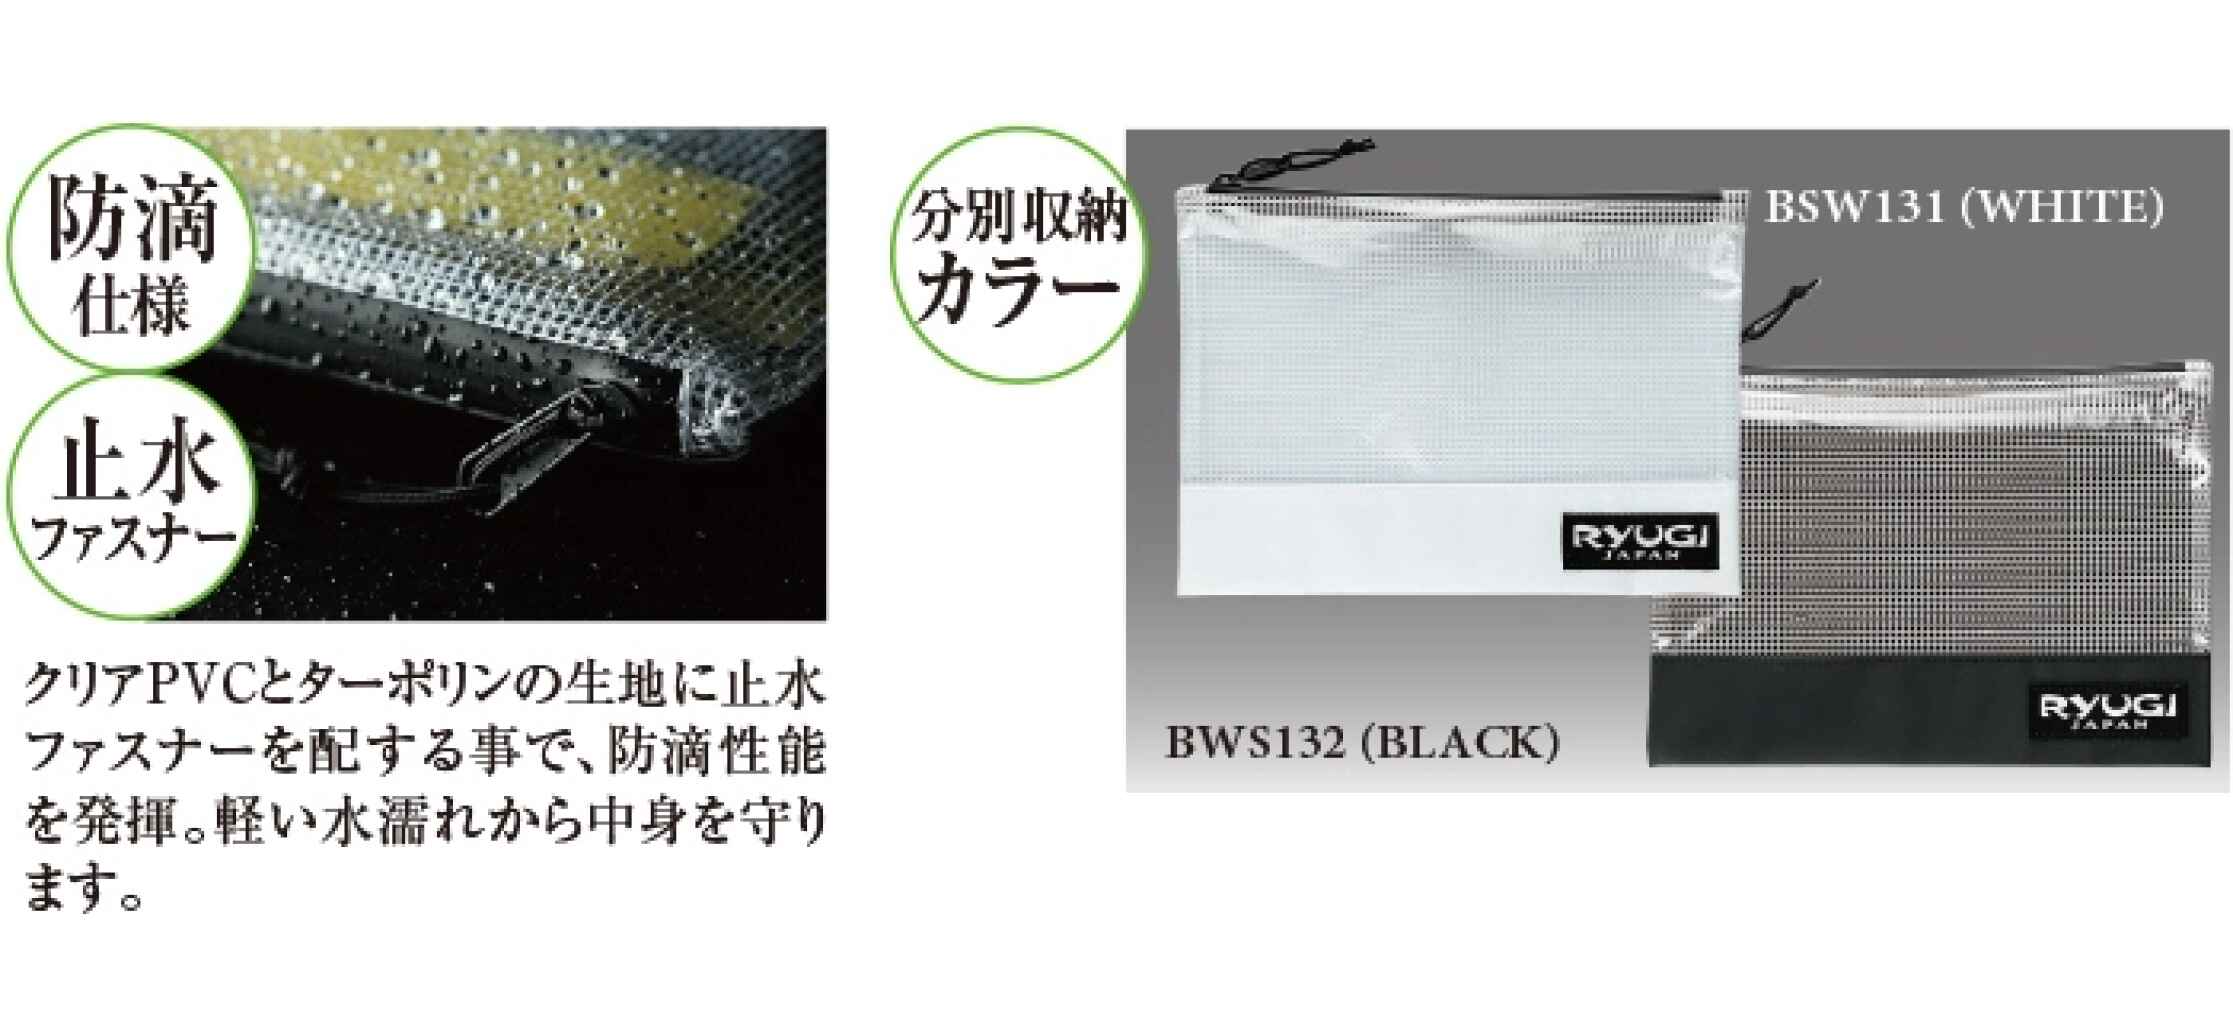 Ryugi Worm Stocker S White